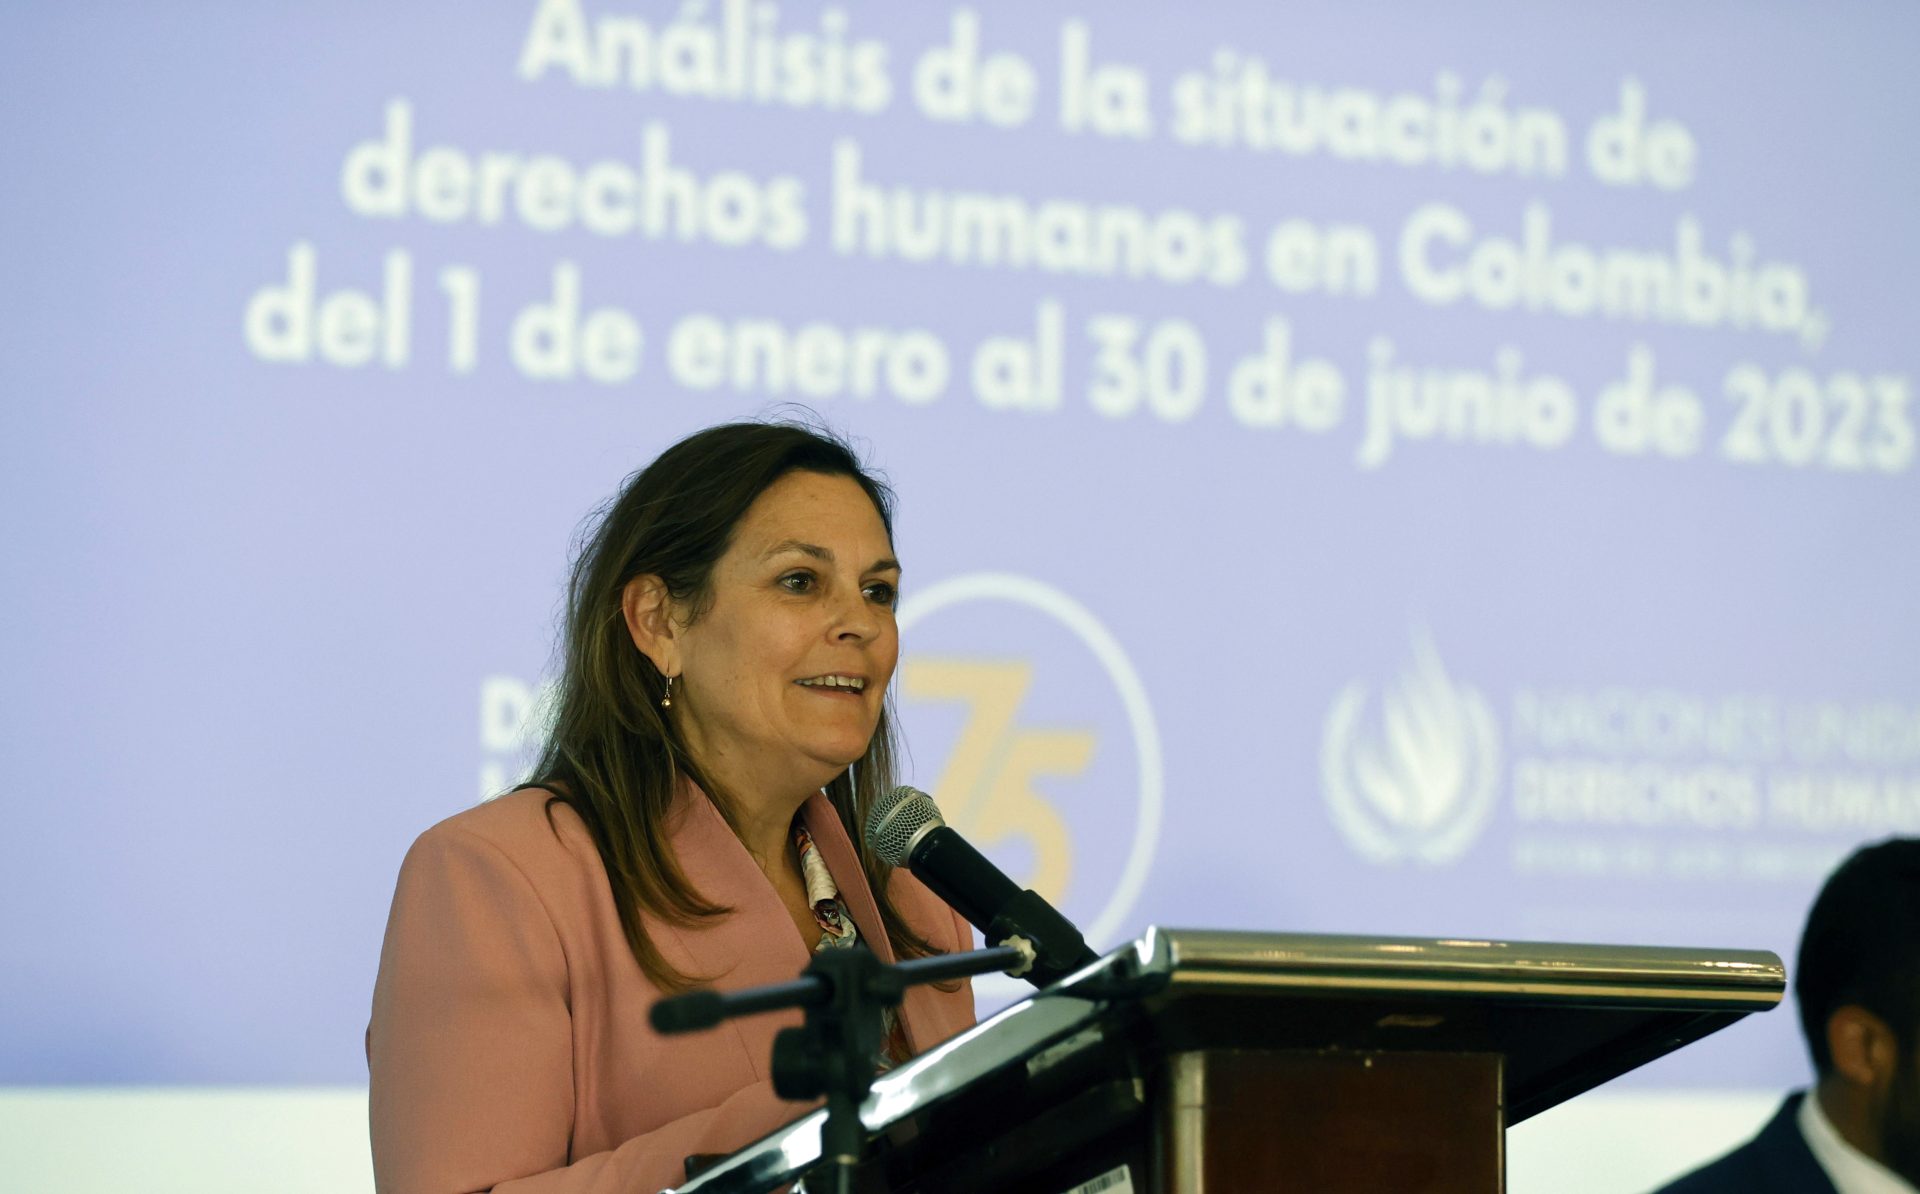 La representante en Colombia de la Oficina de la ONU para los Derechos Humanos, Juliette de Rivero, habla hoy durante la presentación del más reciente informe sobre la materia en el país, en Bogotá (Colombia). EFE/Mauricio Dueñas Castañeda